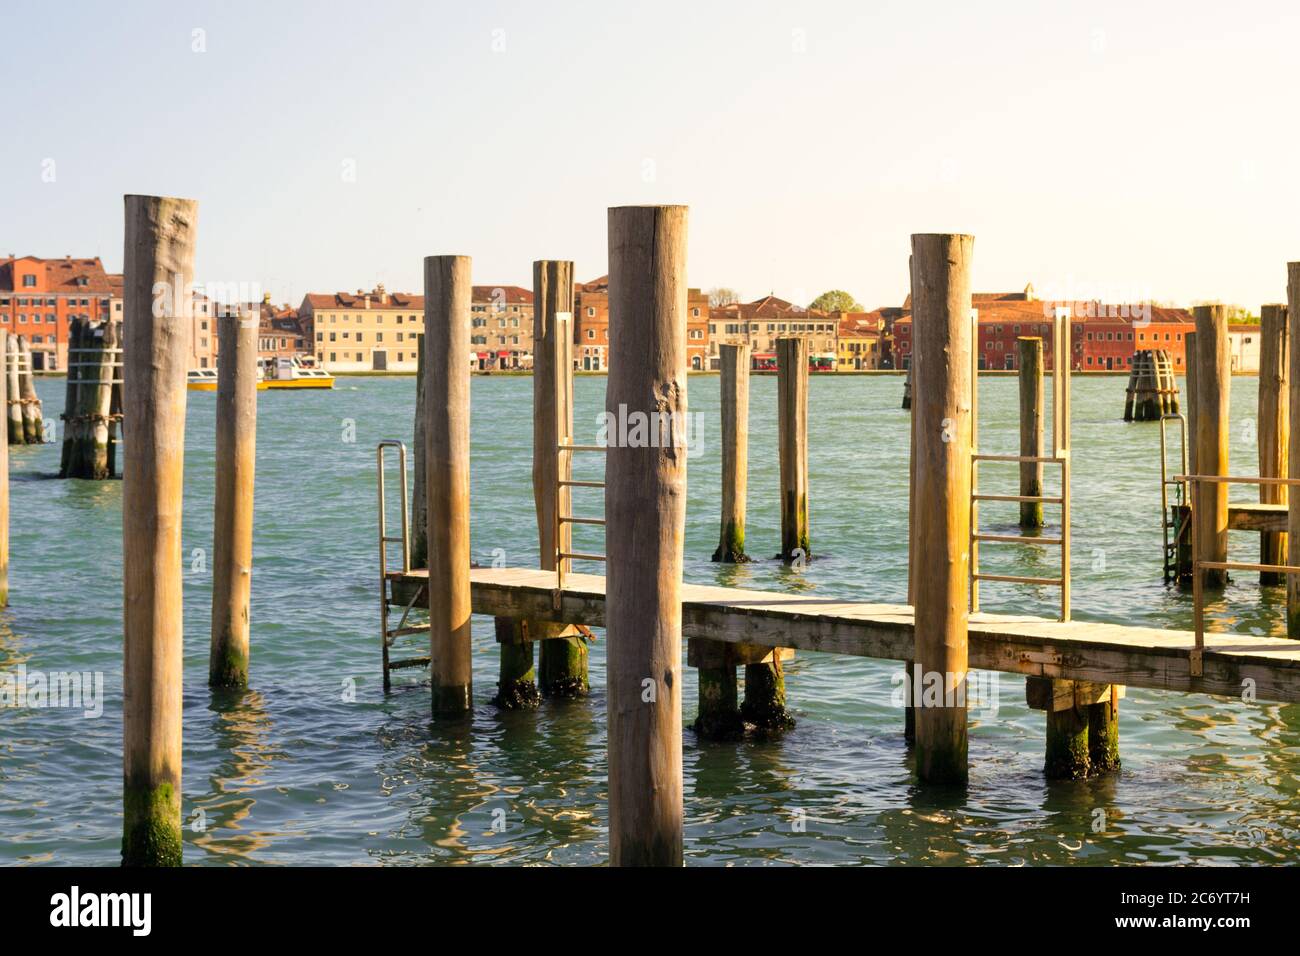 Venezia, Italia. Vista panoramica tipica della laguna, rawn di pali ormeggi in prospettiva con la peculiare architettura veneziana sullo sfondo. Foto Stock